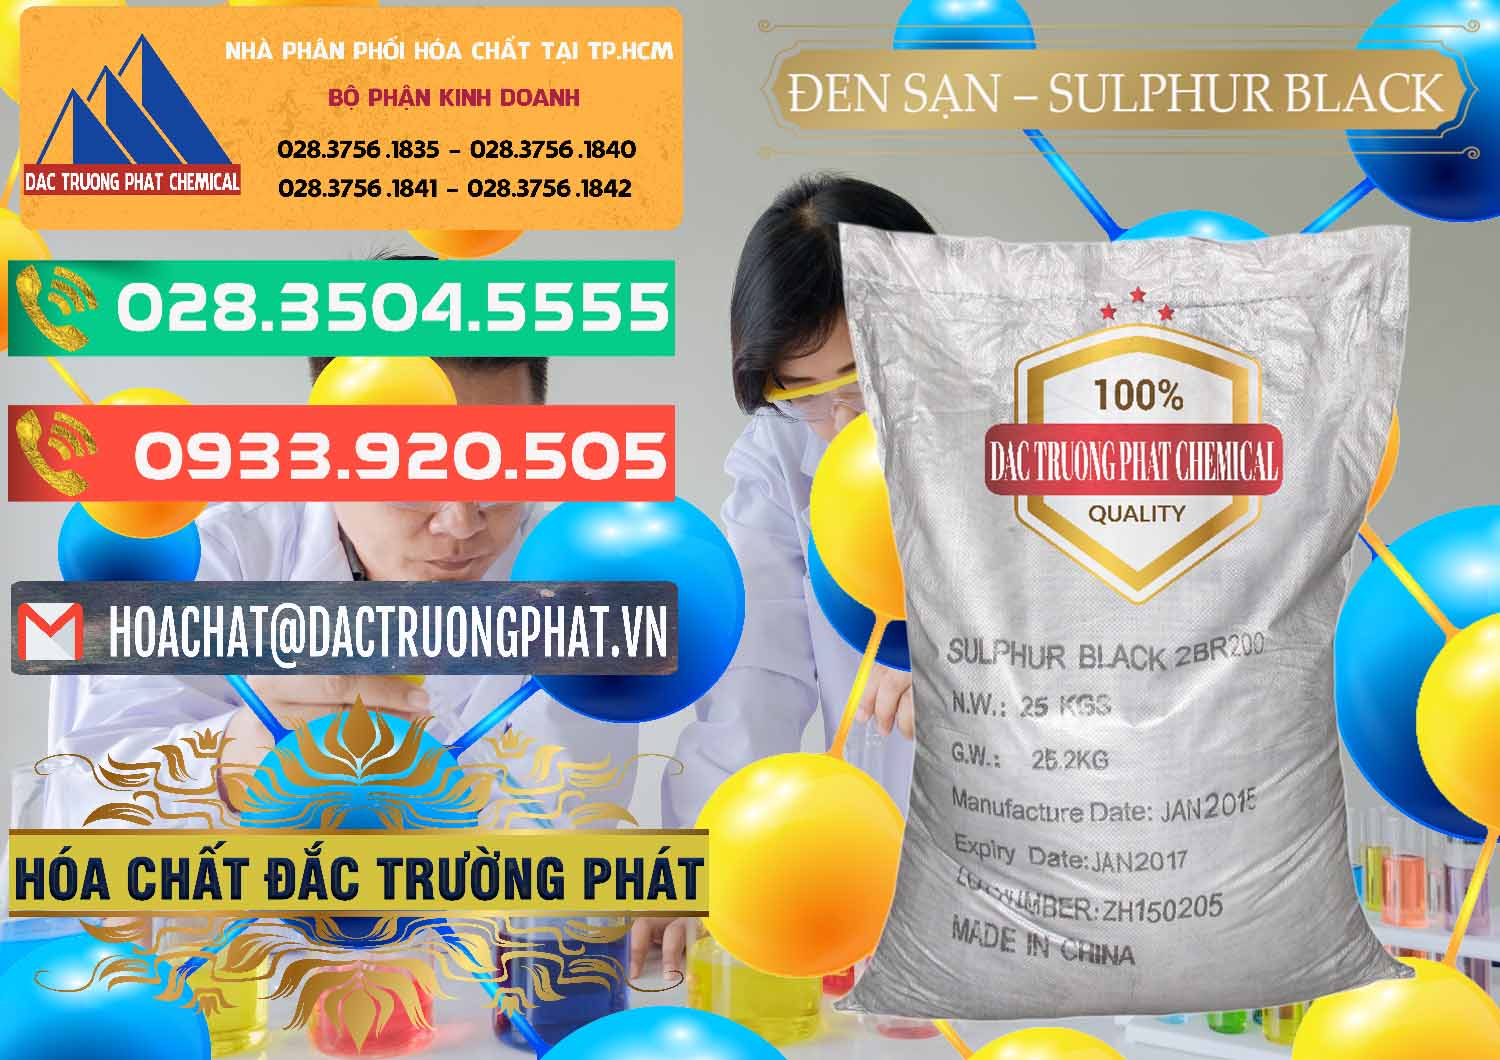 Nơi bán ( phân phối ) Đen Sạn – Sulphur Black Trung Quốc China - 0062 - Công ty chuyên nhập khẩu và cung cấp hóa chất tại TP.HCM - congtyhoachat.com.vn